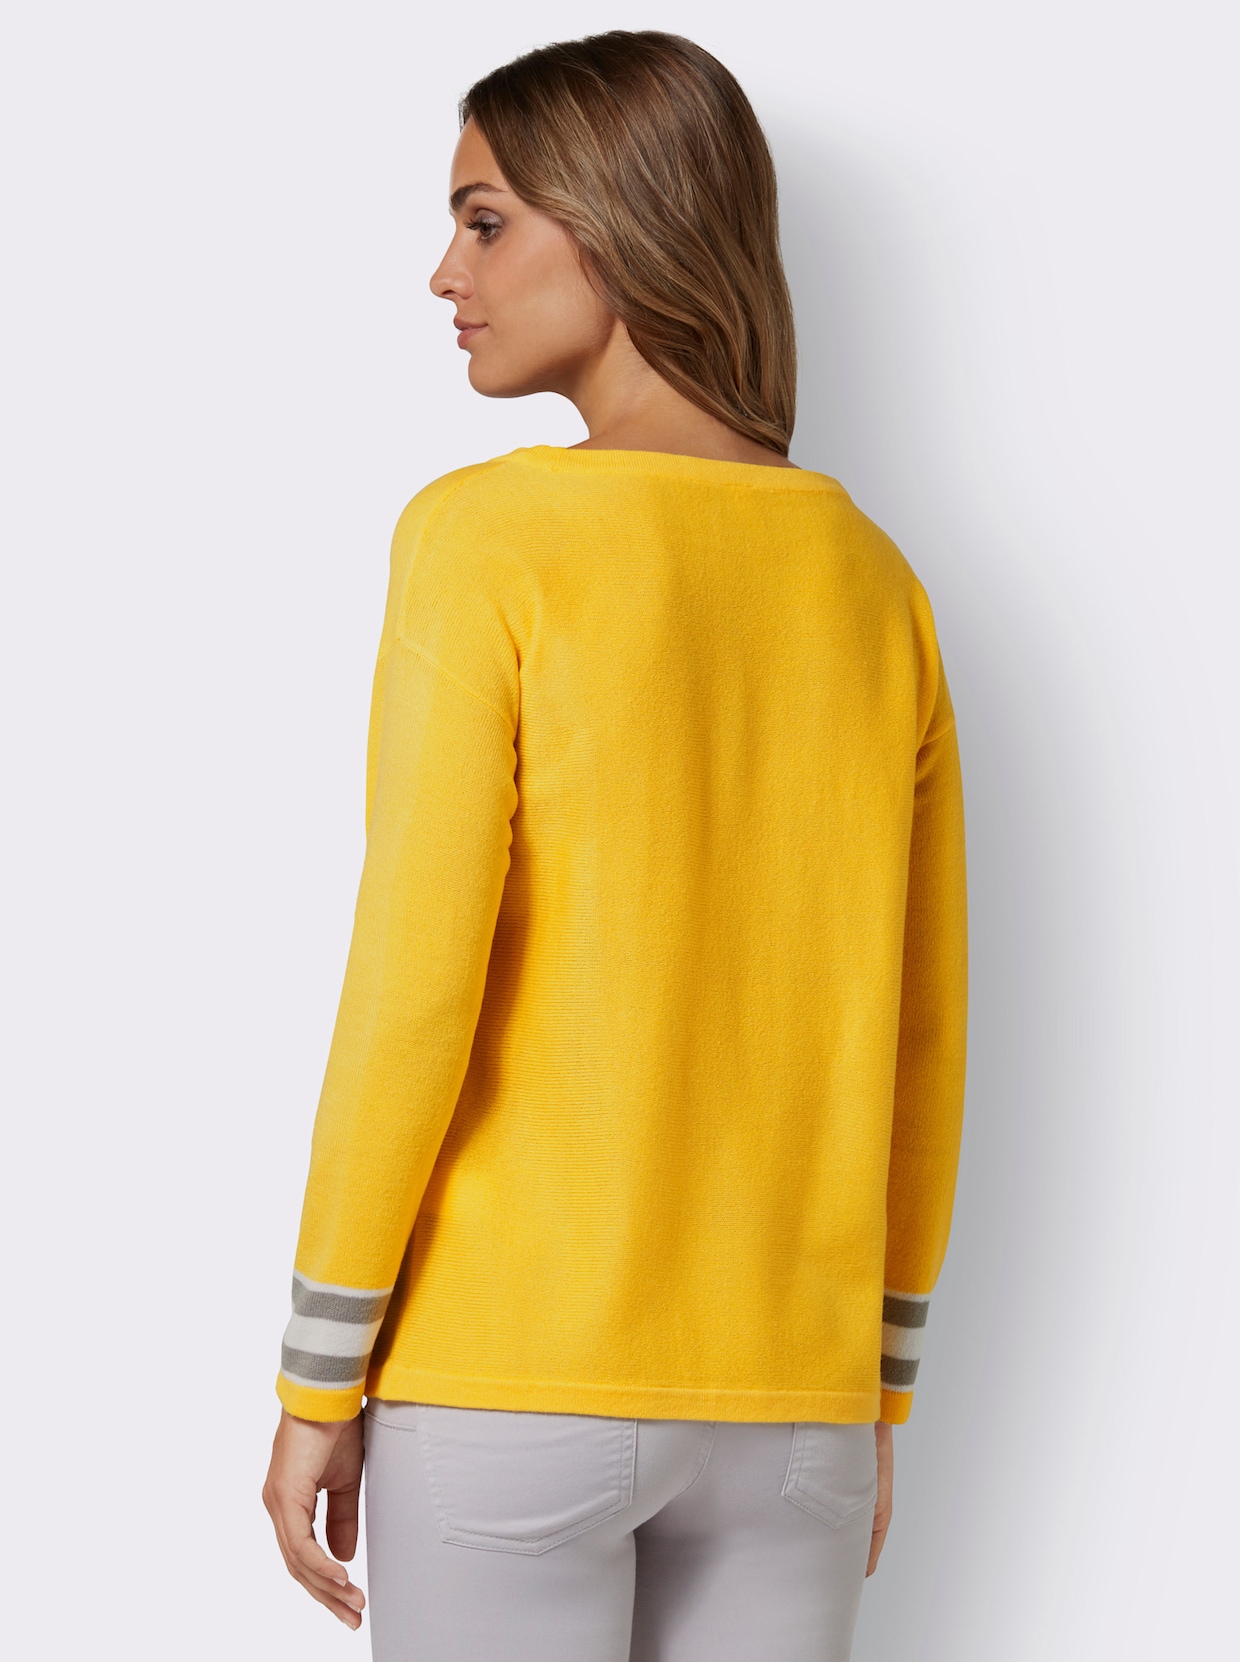 Pullover met boothals - geel/steengrijs gedessineerd